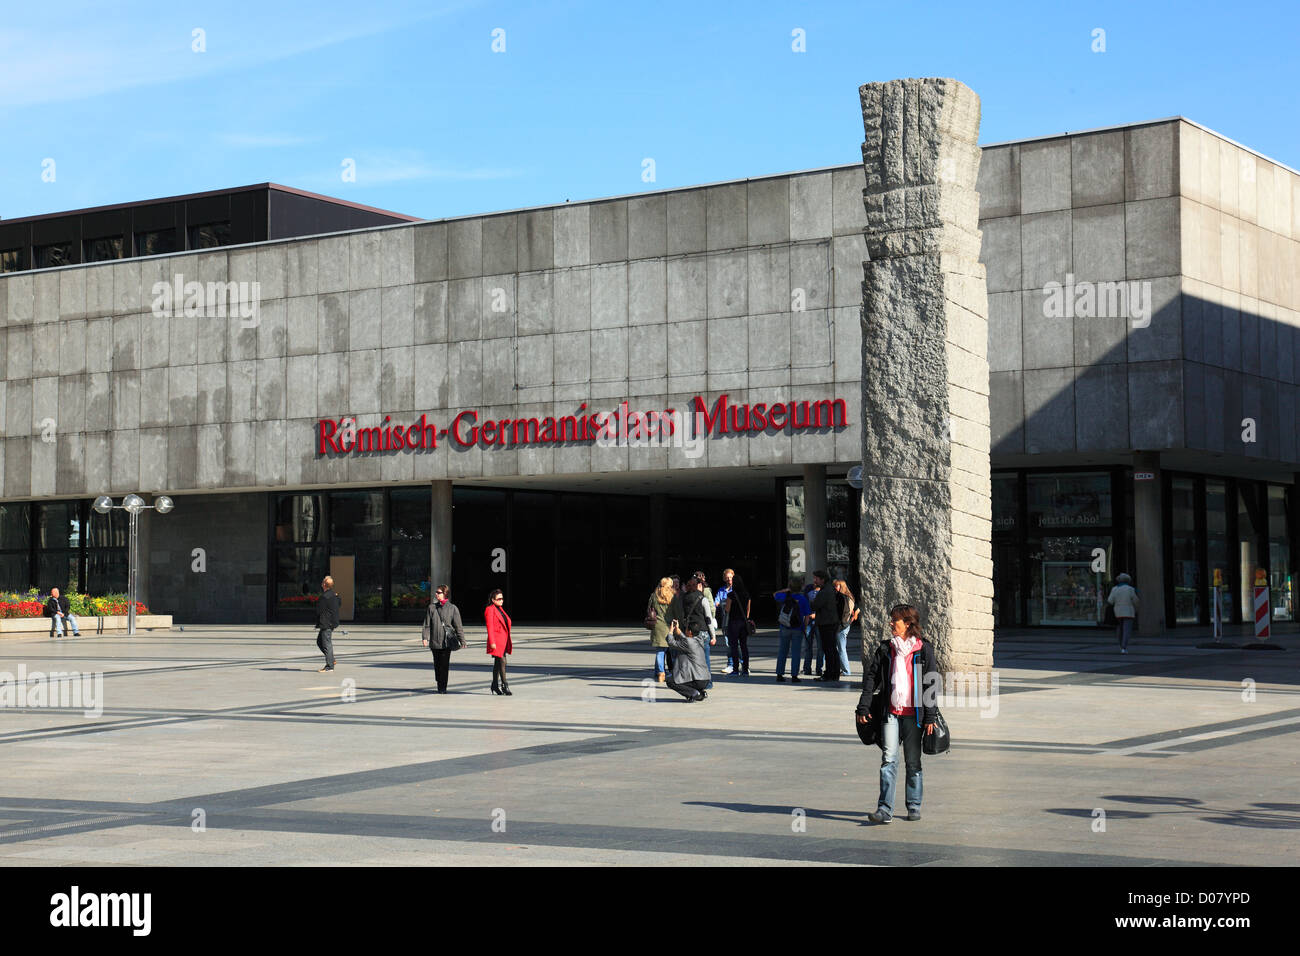 Museum am Roemisch-Germanisches Roncalliplatz dans Koeln am Rhein, Allemagne Banque D'Images